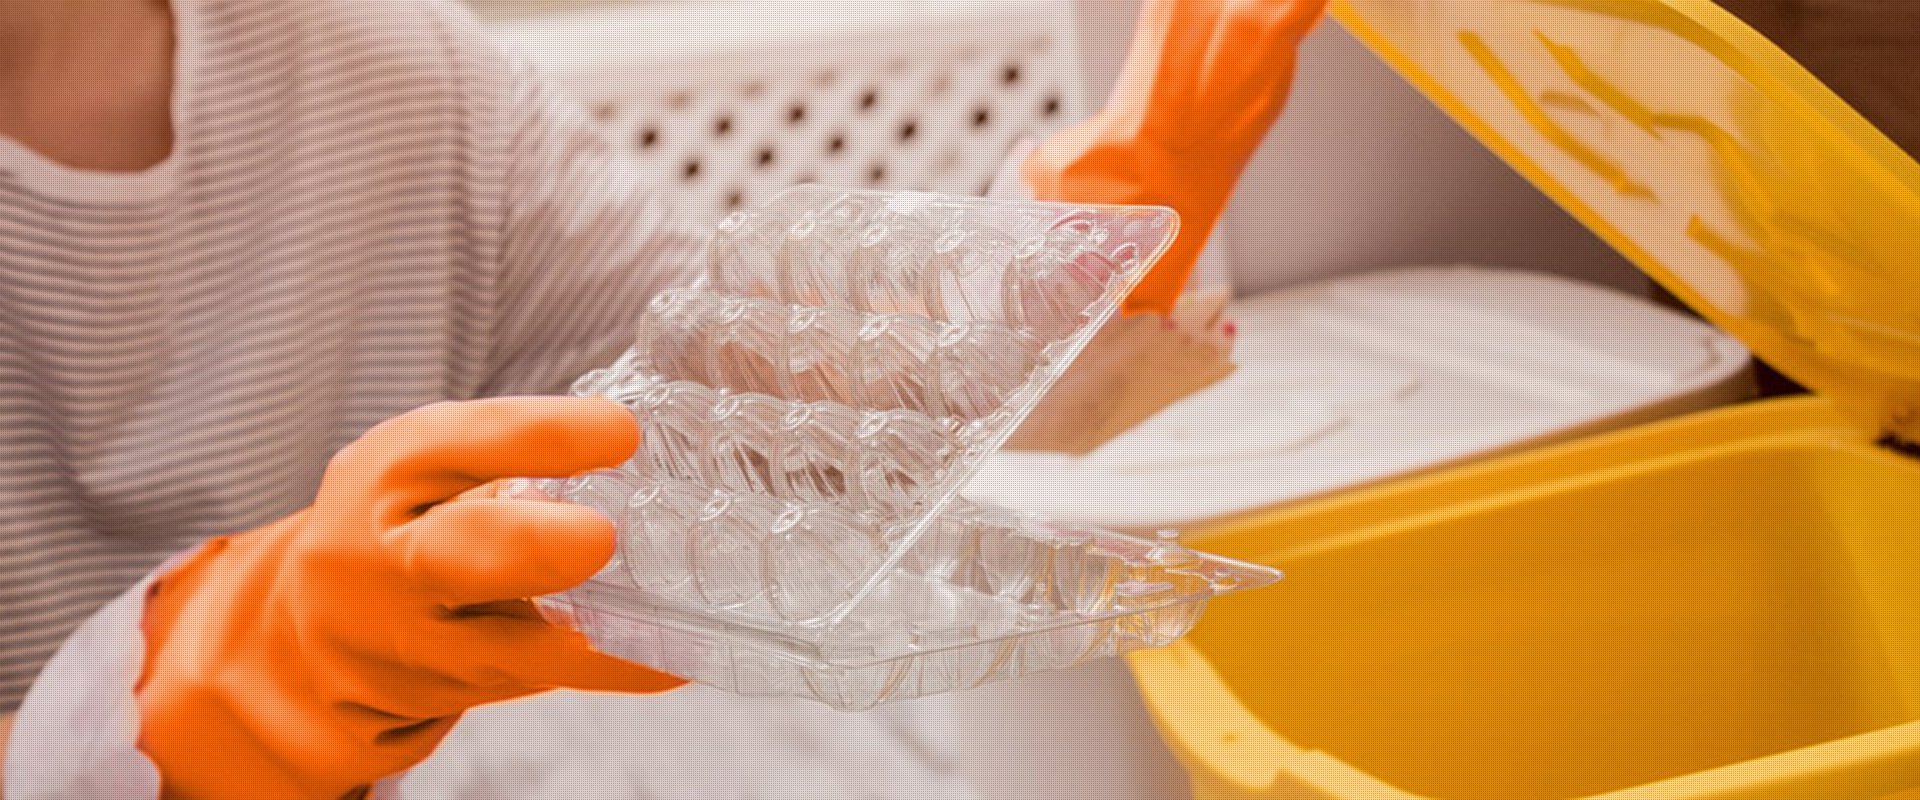 Eine Person mit orangefarbenen Plastikhandschuhen hält eine klare Kunststoffverpackung von Eiern und steht im Begriff, sie in einen offenen gelben Müllbehälter zu werfen.